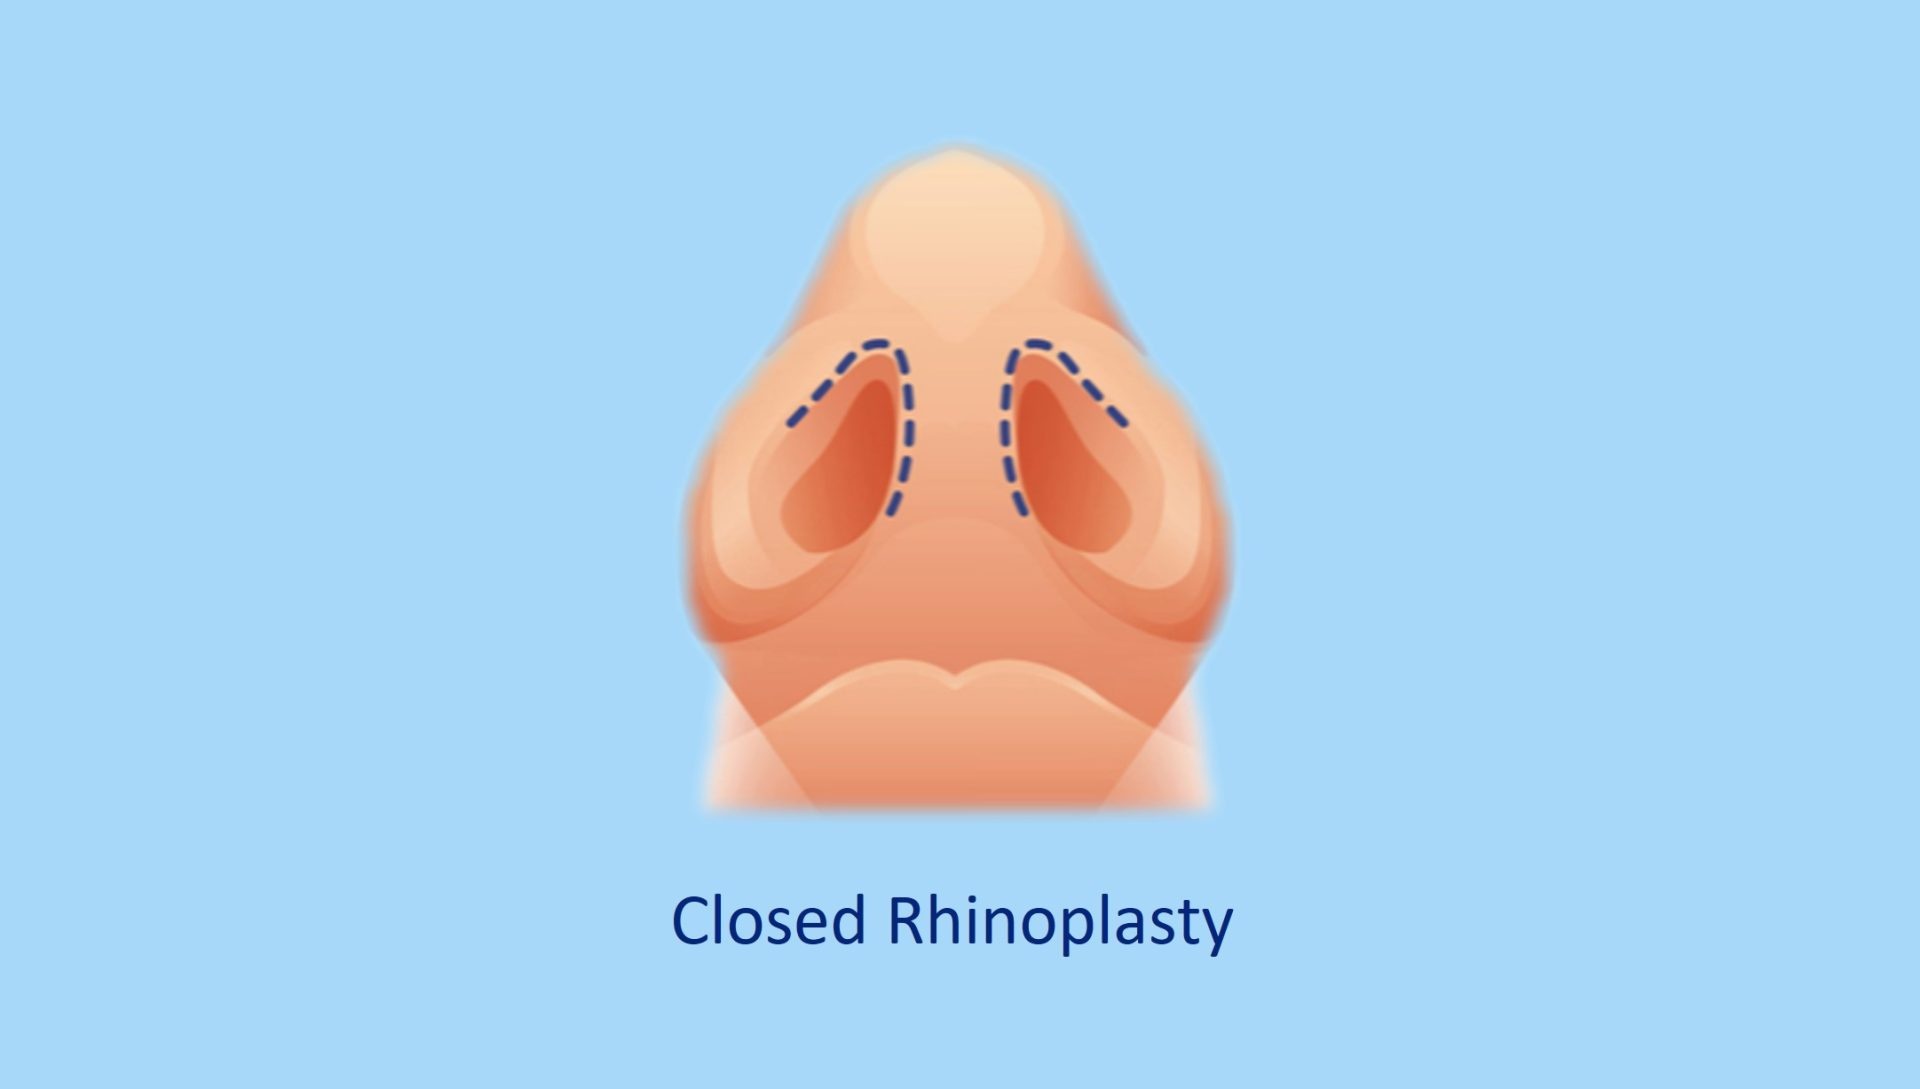 closed rhinoplasty